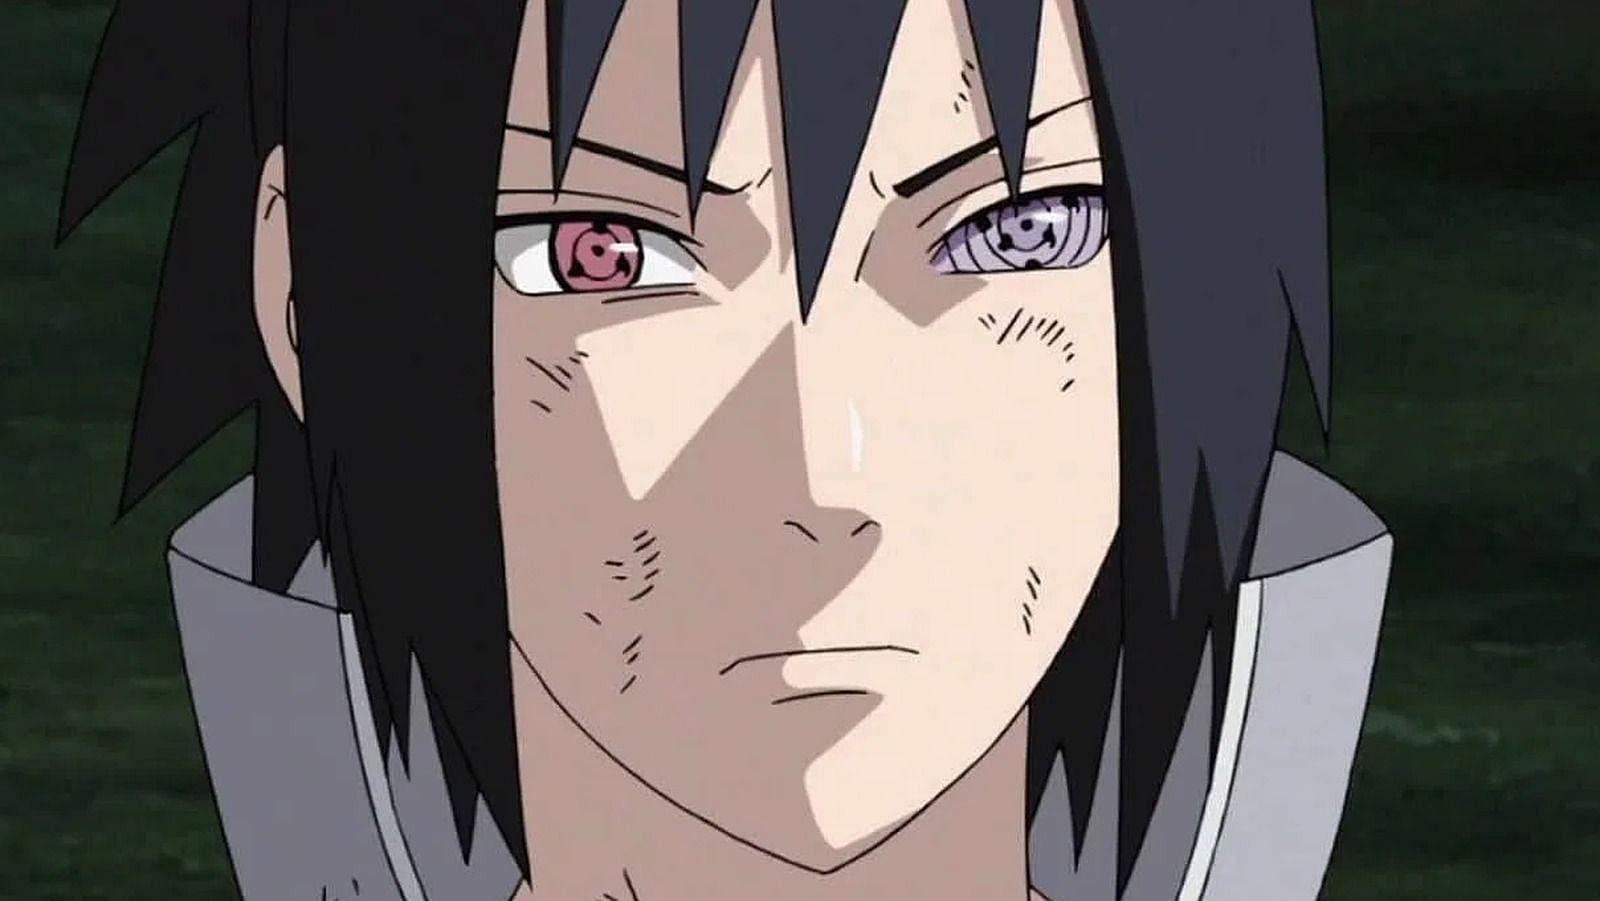 Sasuke Uchiha as seen in Naruto Shippuden (Image via Studio Pierrot)